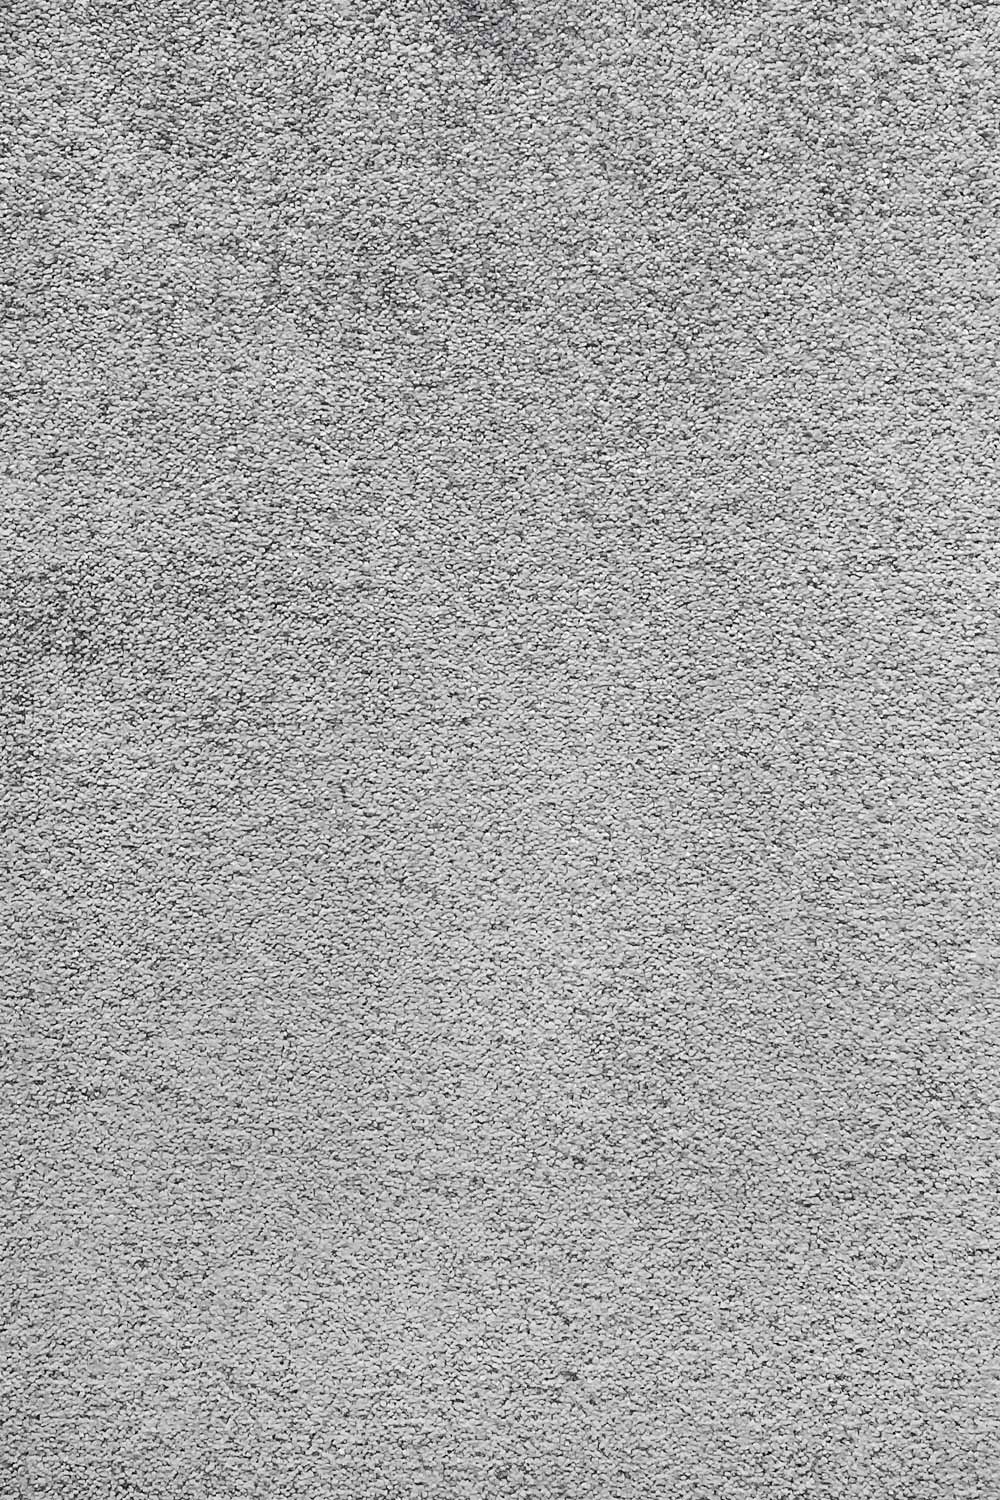 Metrážový koberec AVELINO 95 400 cm